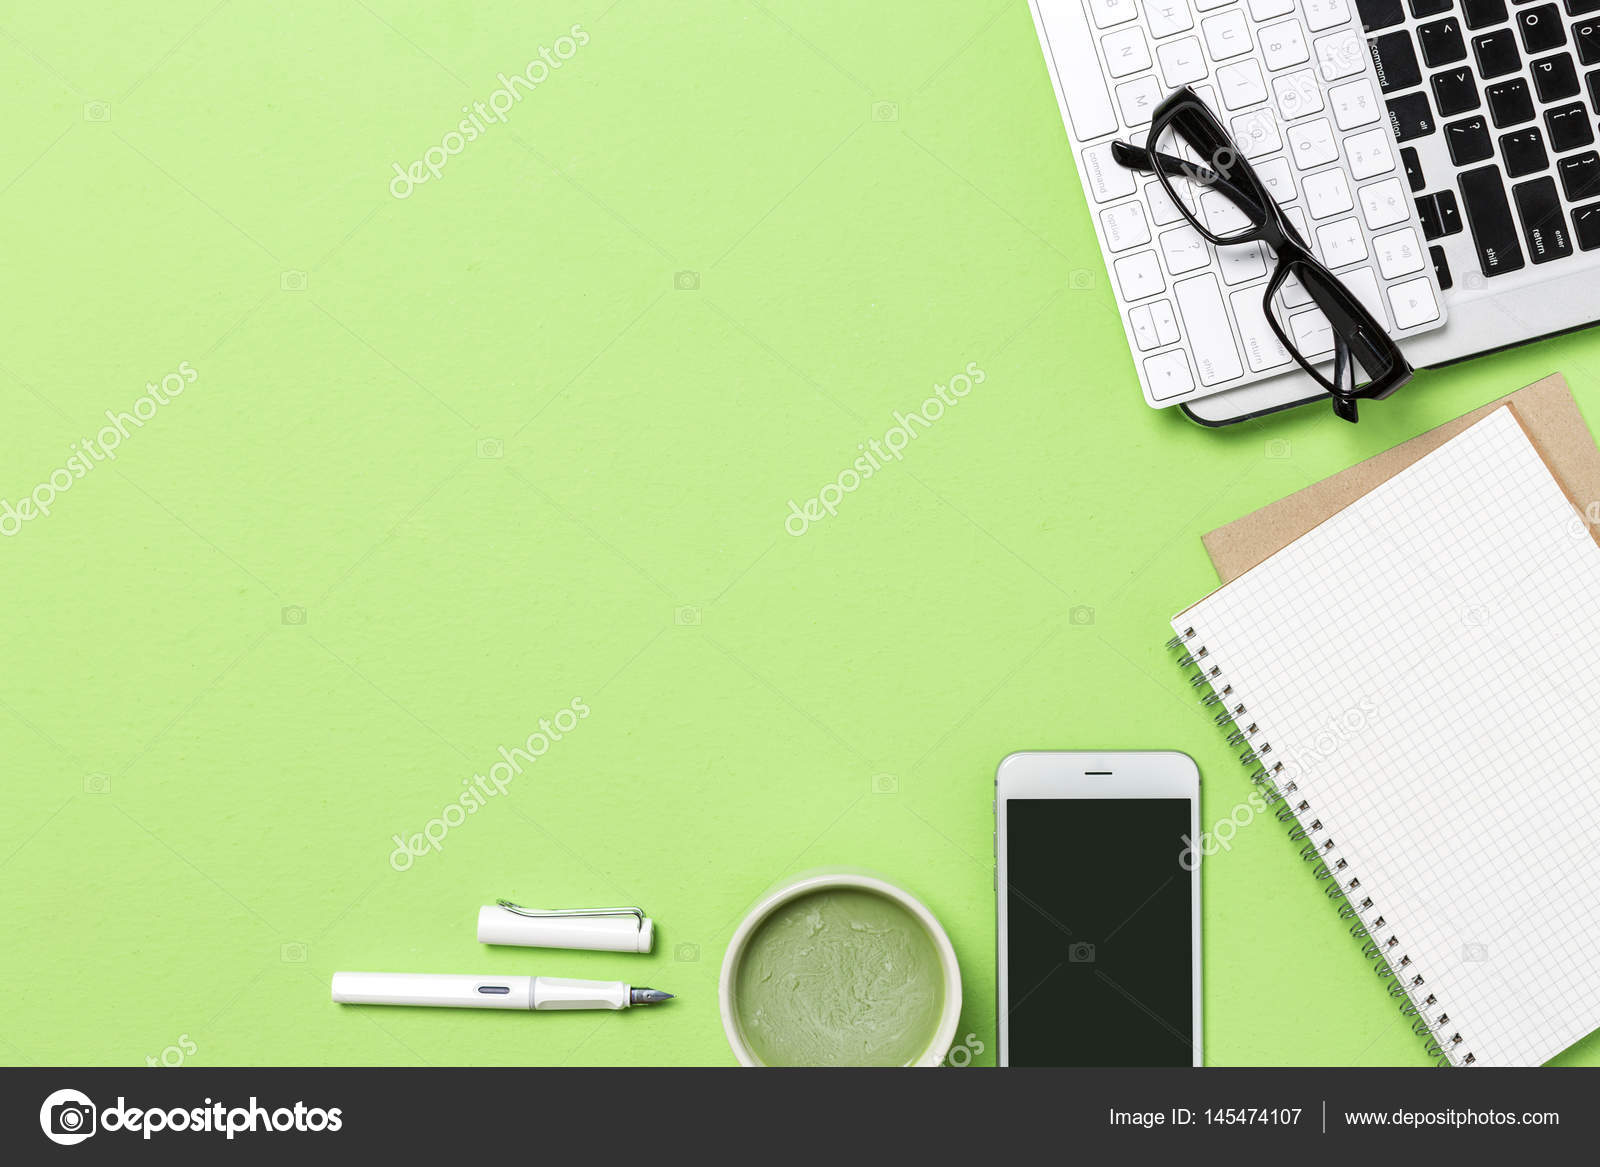 Mô phỏng nơi làm việc văn phòng trên nền xanh của bàn làm việc giúp bạn tập trung vào công việc một cách tốt nhất. Không gian làm việc với màu xanh lá cây mang lại sự thư giãn, tươi mới và tăng cường hiệu suất làm việc. Hãy xem hình ảnh để thấy rõ sự khác biệt khi làm việc trên nền xanh.